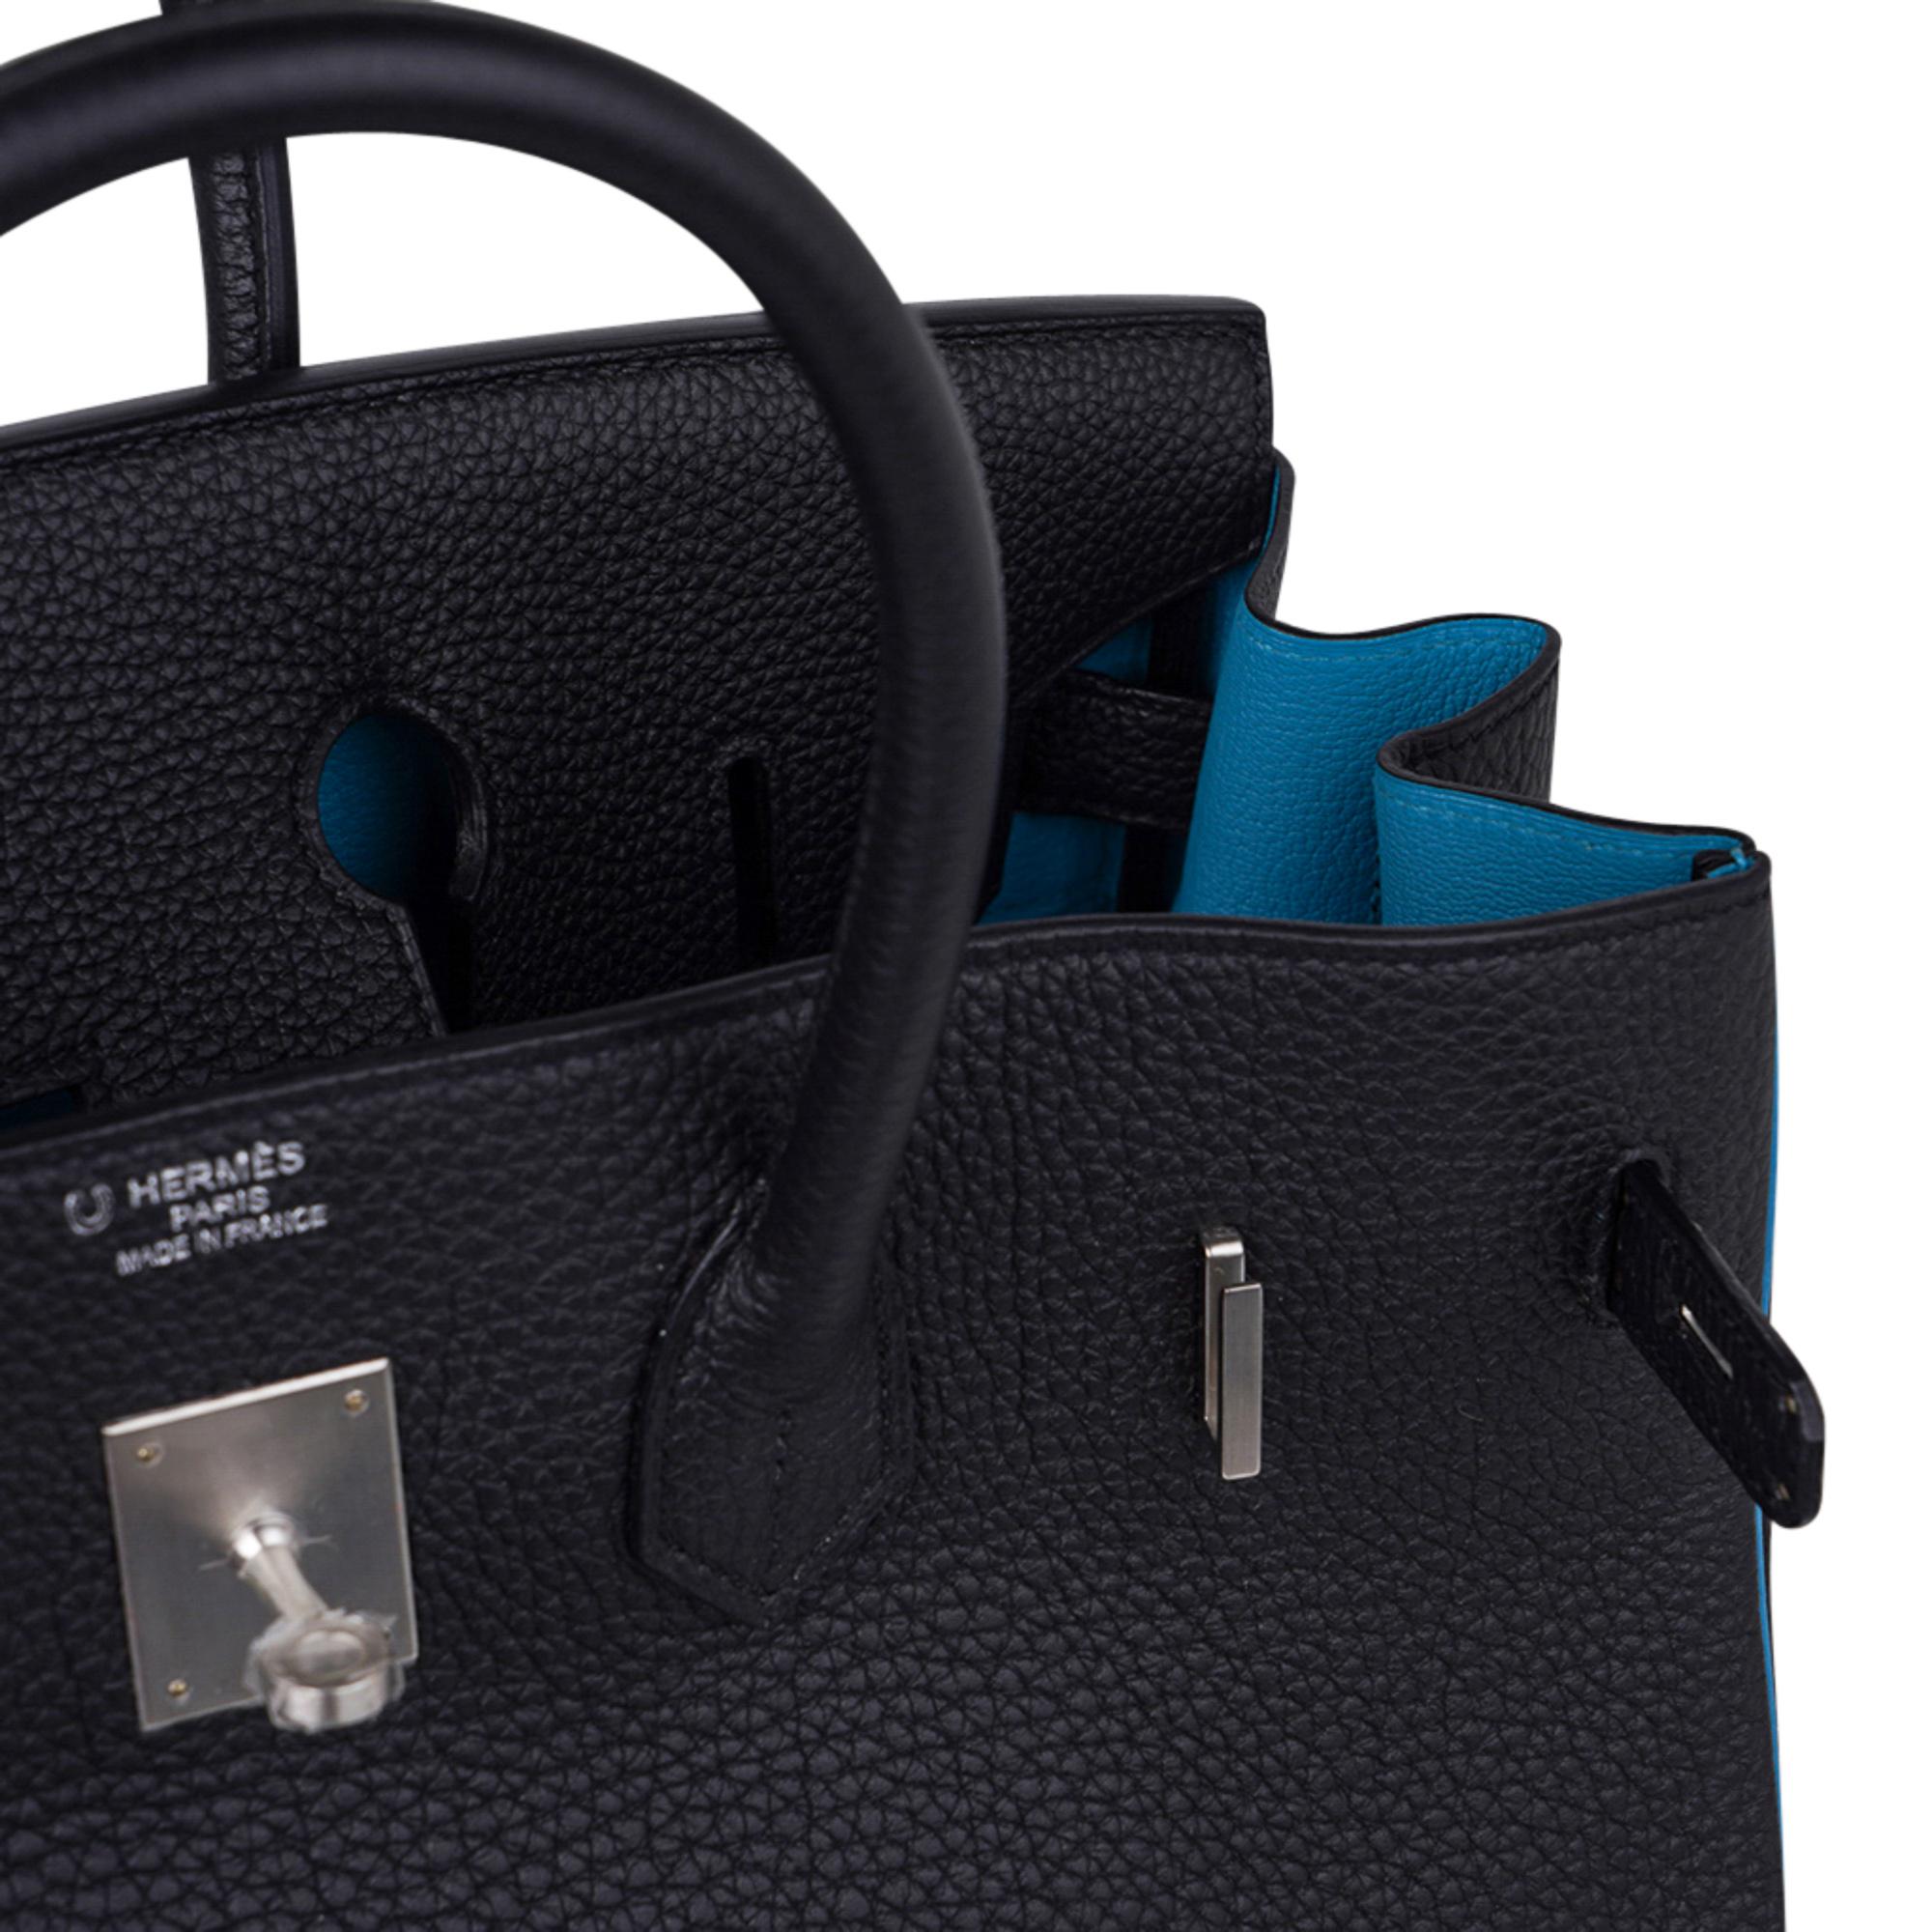 Mightychic bietet eine Hermes Birkin HSS 35 Tasche in Schwarz mit türkisfarbener Innenausstattung und Paspelierung an. 
Eine atemberaubende Sonderbestellung Hermes Birkin Tasche.
Einzigartig mit seltenen gebürsteten Palladiumbeschlägen.
Das